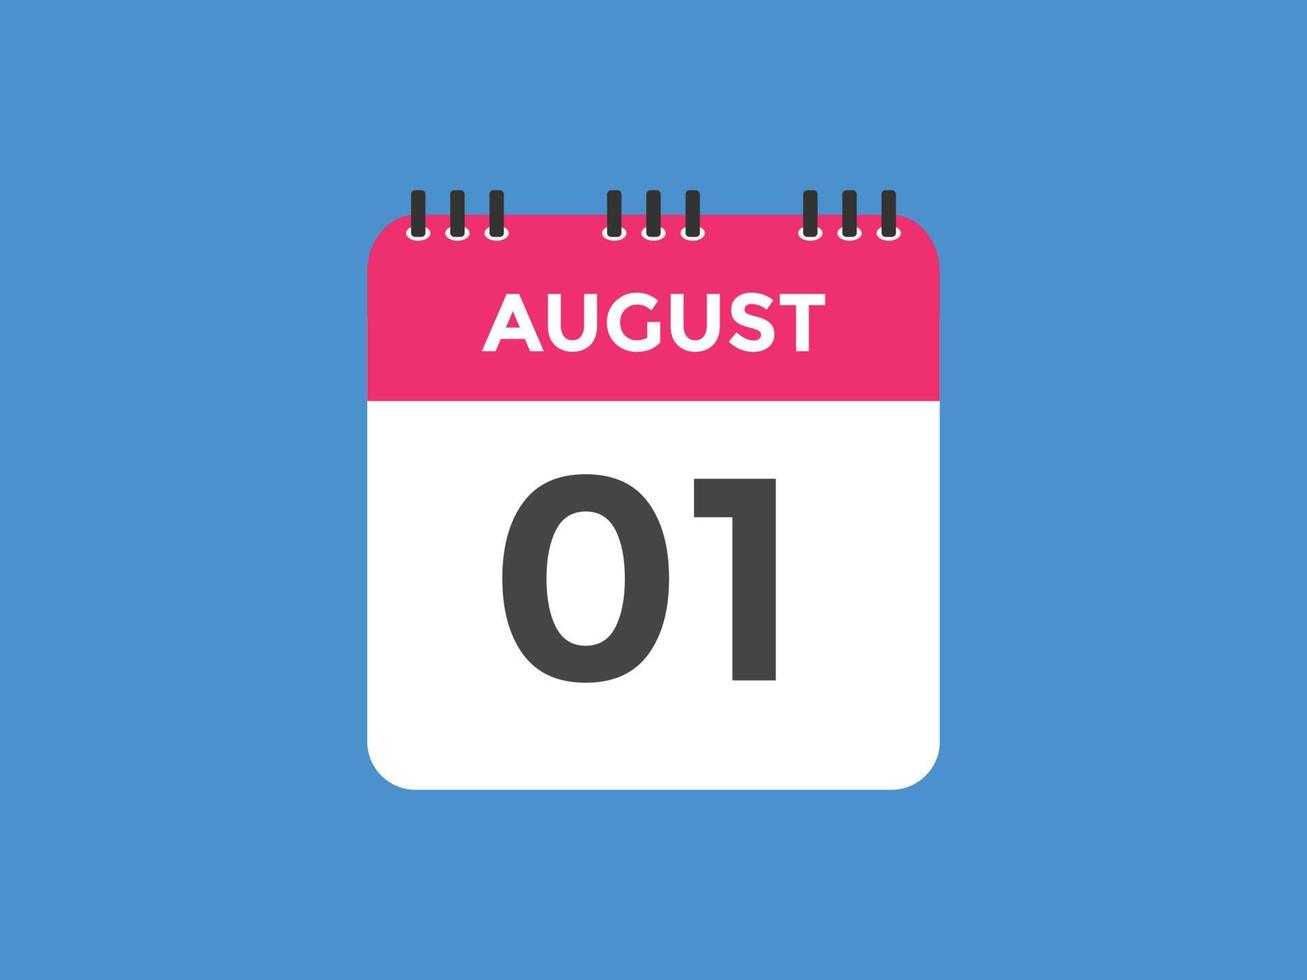 Recordatorio del calendario del 1 de agosto. Plantilla de icono de calendario diario del 1 de agosto. plantilla de diseño de icono de calendario 1 de agosto. ilustración vectorial vector